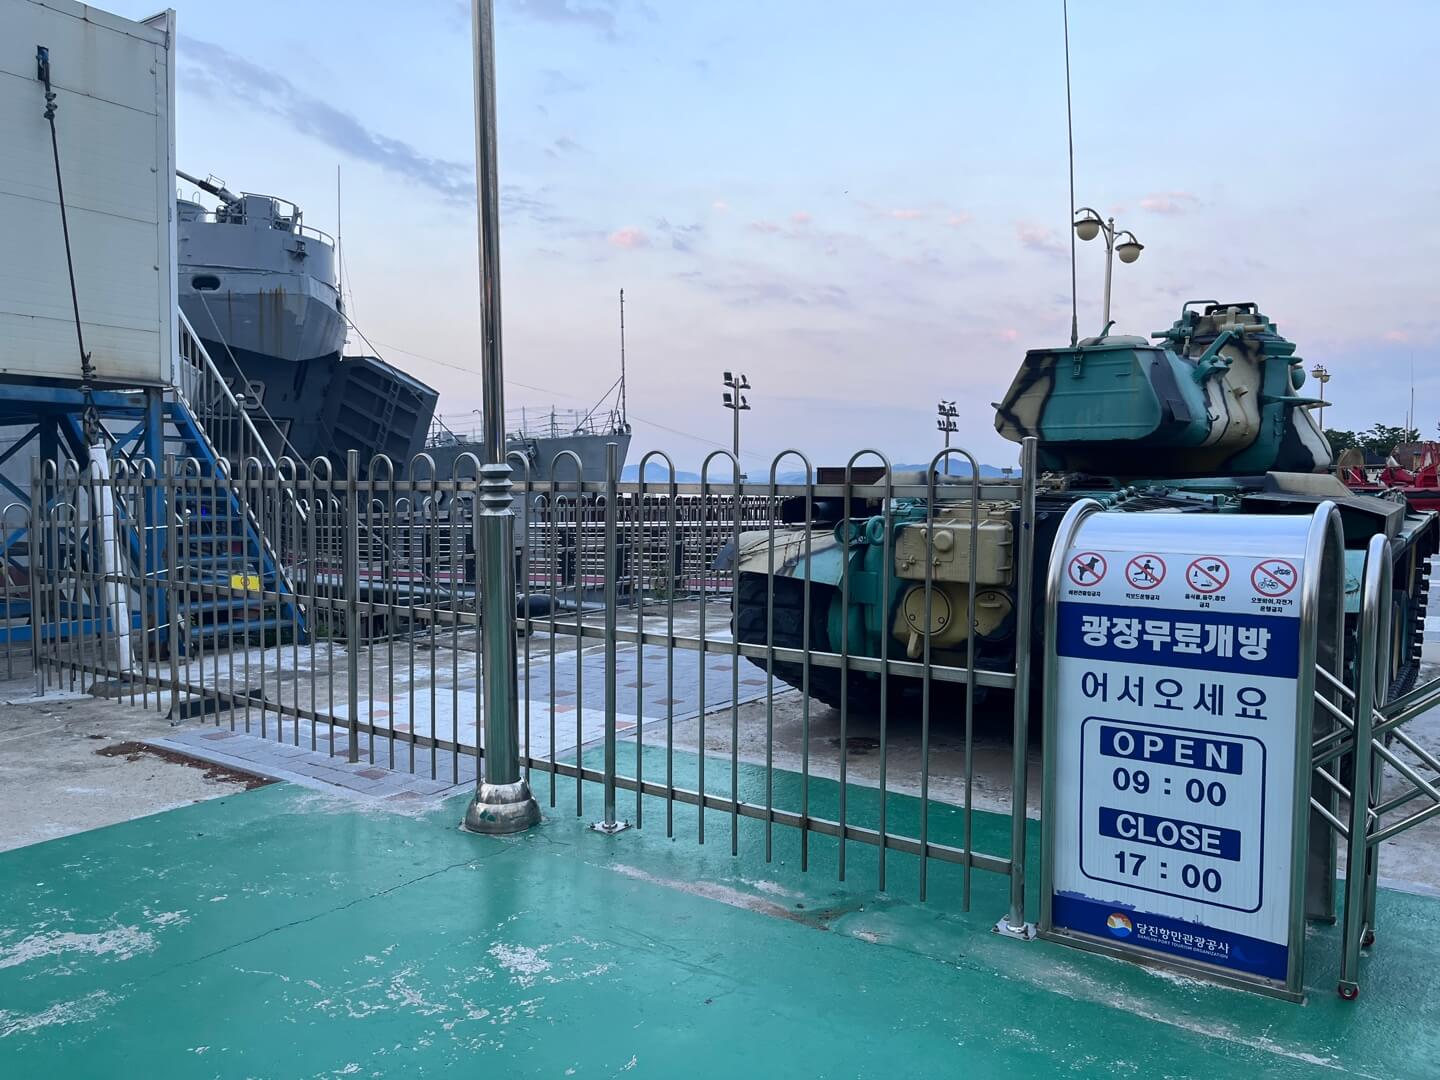 삽교호 함상공원에 있는 탱크와 군함을 찍은 모습입니다